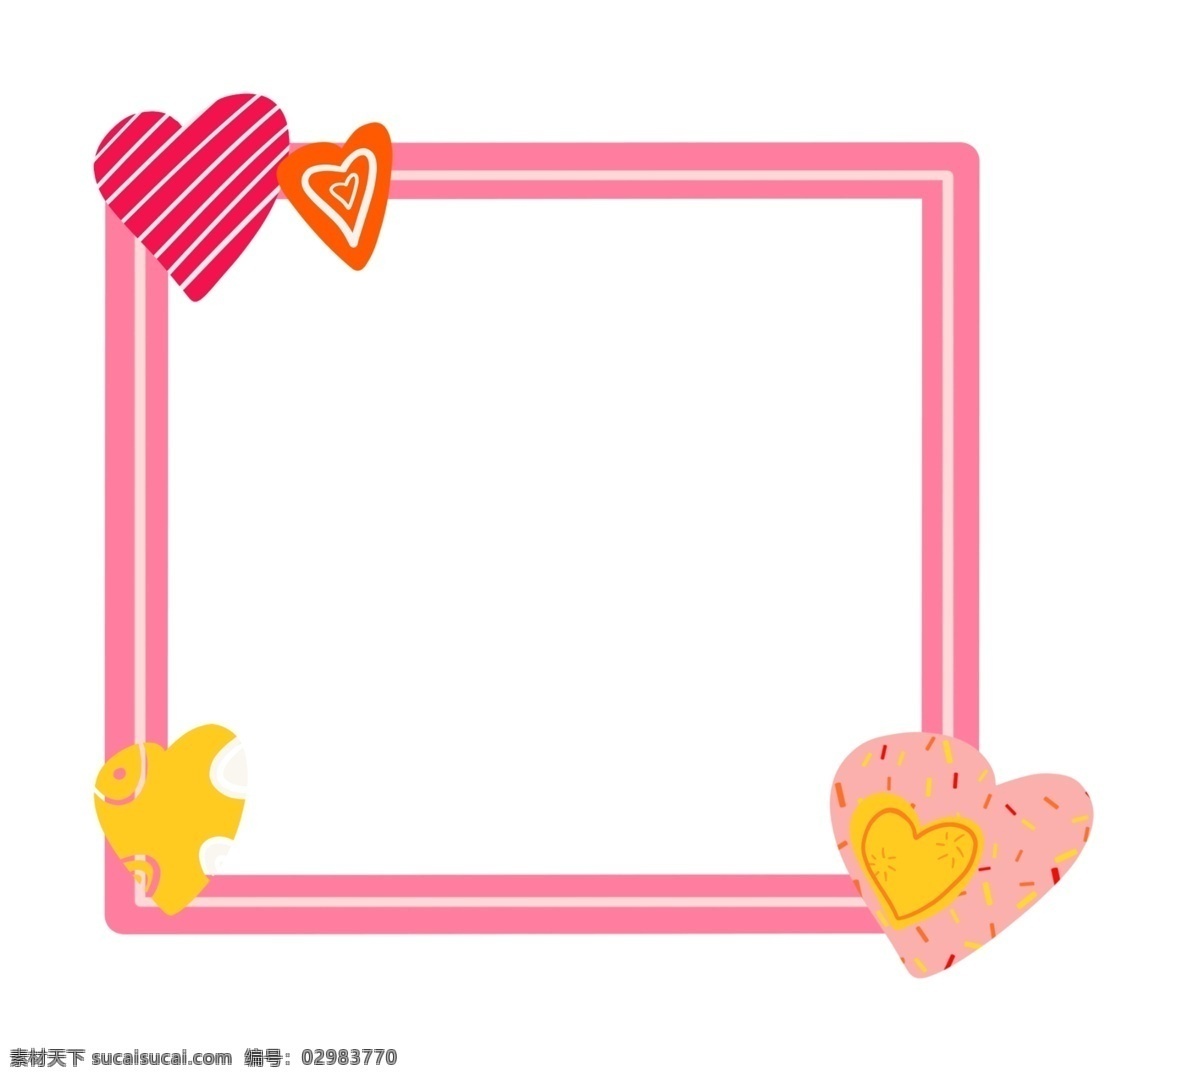 粉色 爱心 可爱 边框 粉色的边框 卡通边框 小物边框 物品边框 美丽边框 漂亮边框 黄色的爱心